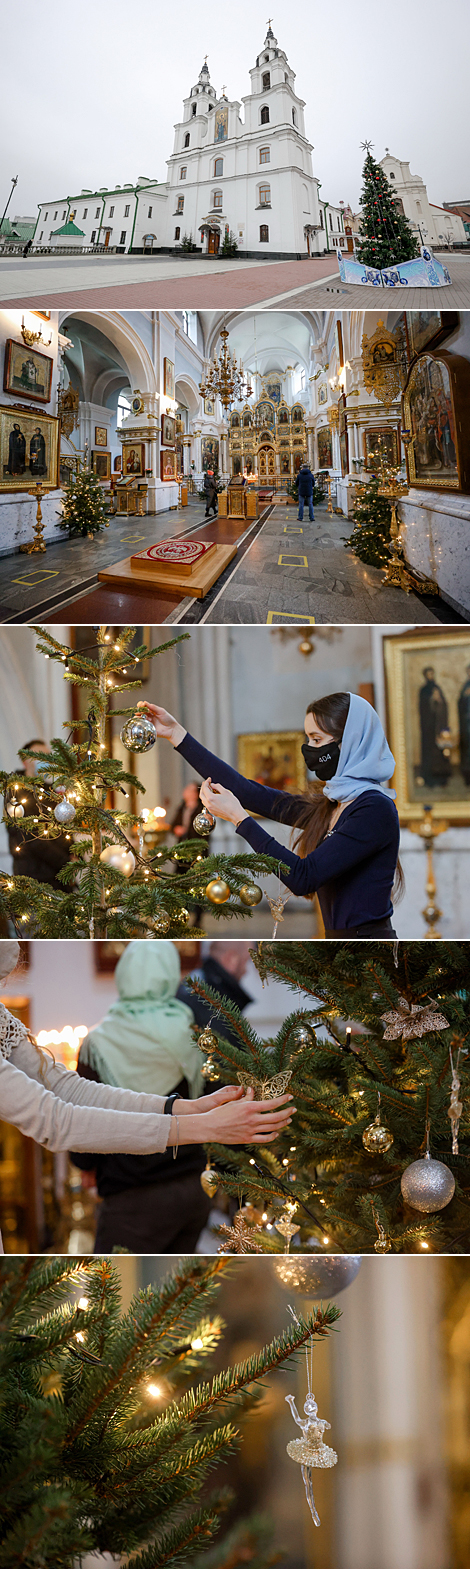 В ожидании Рождества: украшение ёлки в Свято-Духовом кафедральном соборе